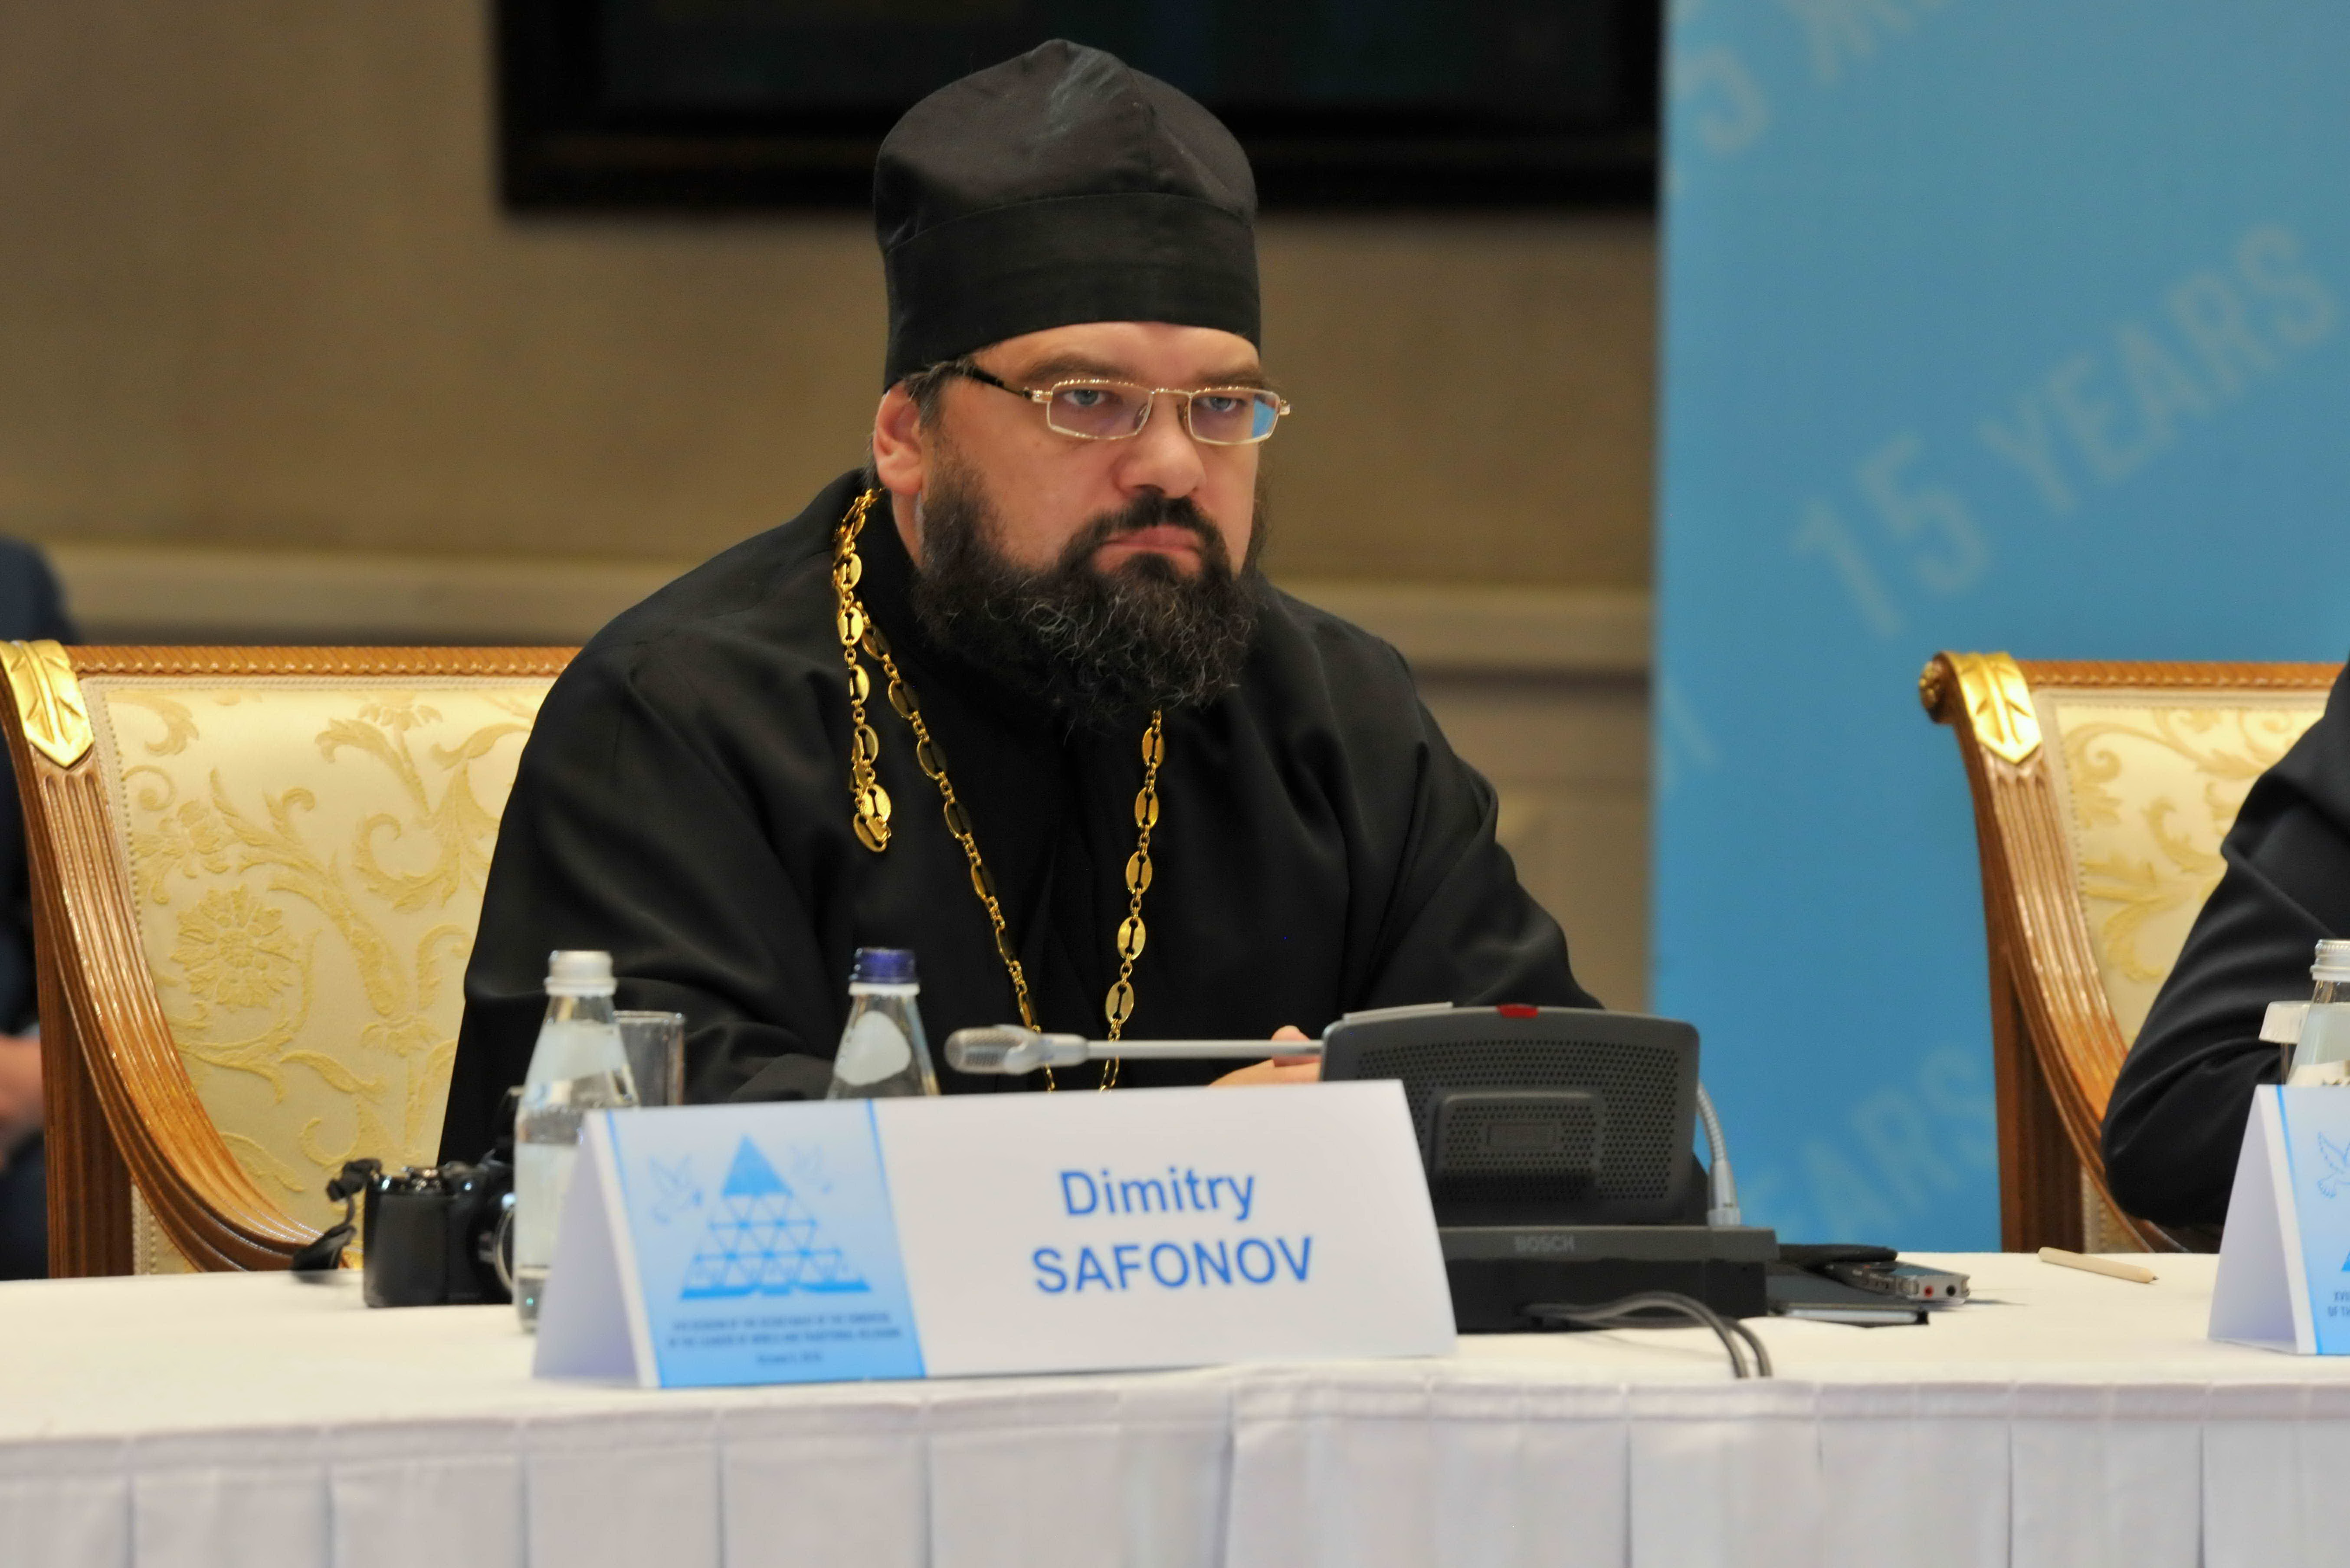 Статья исполнительного секретаря МСР священника Димитрия Сафонова опубликована в Казахстане